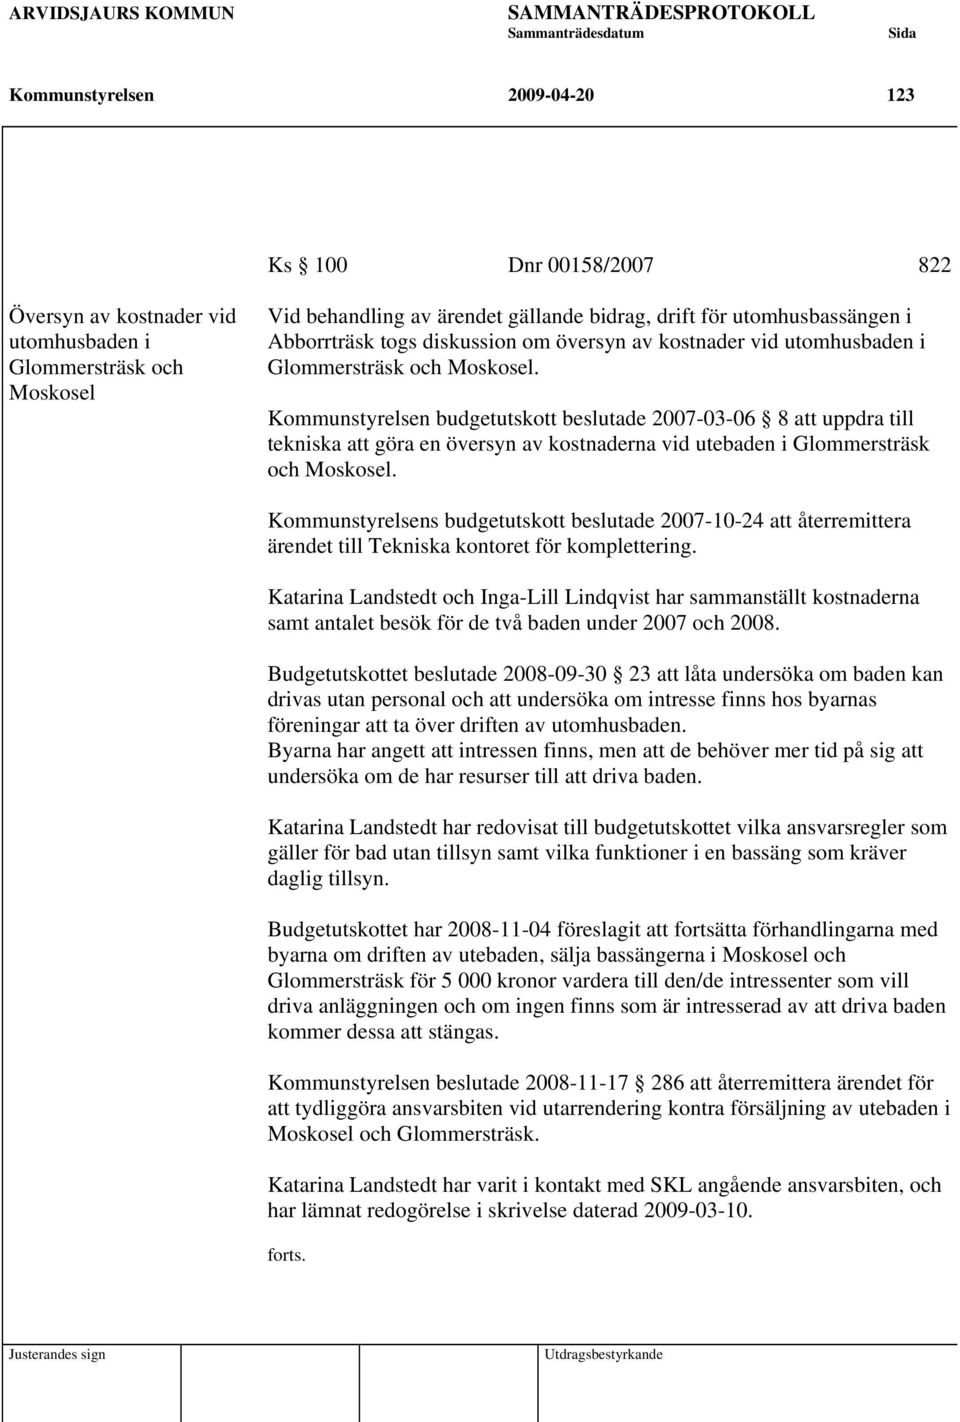 Kommunstyrelsen budgetutskott beslutade 2007-03-06 8 att uppdra till tekniska att göra en översyn av kostnaderna vid utebaden i Glommersträsk och Moskosel.